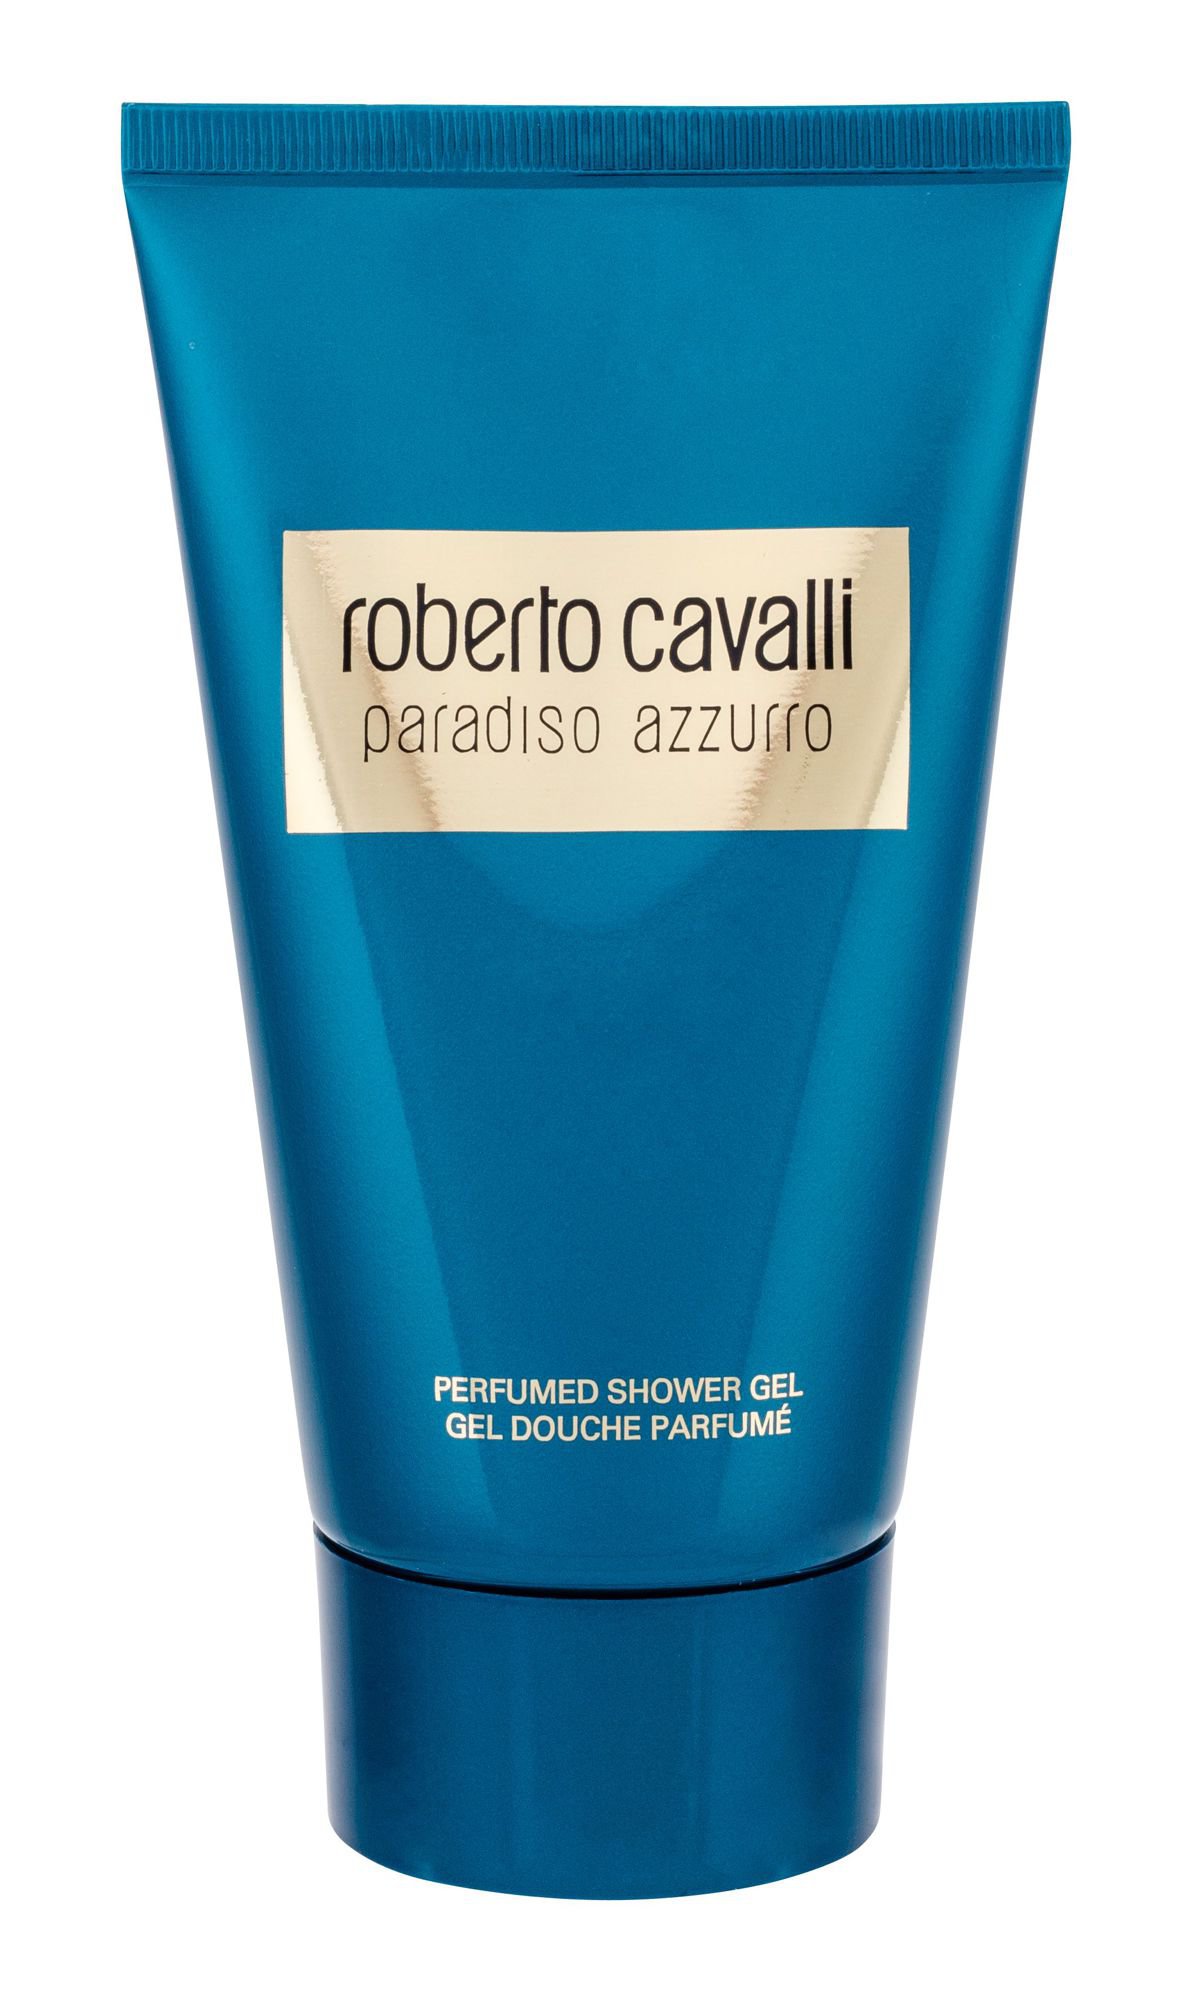 Roberto Cavalli Paradiso Azzurro, tusfürdő gél 150ml